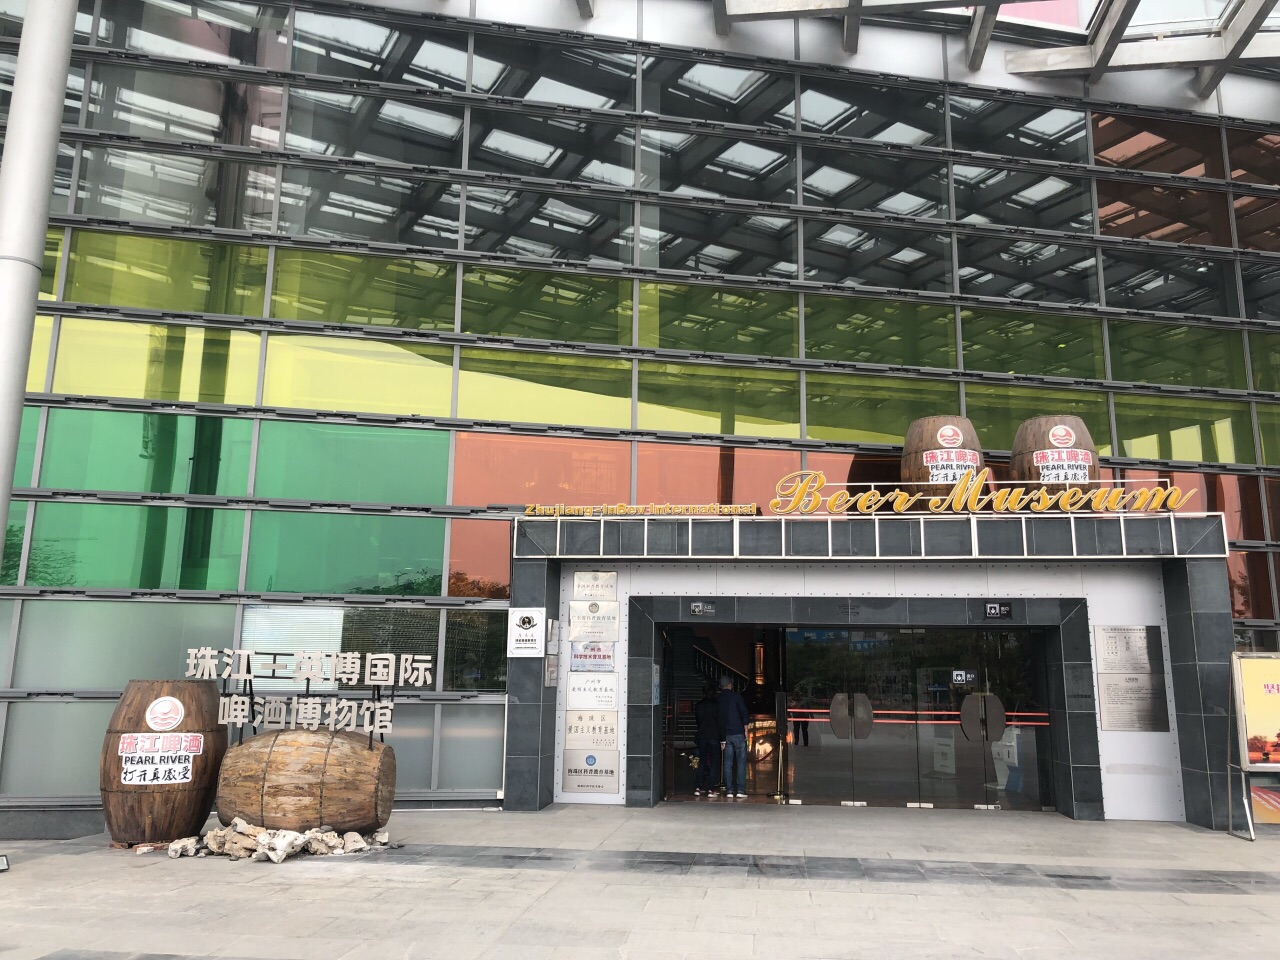 广州珠江-英博国际啤酒博物馆好玩吗,广州珠江-英博国际啤酒博物馆